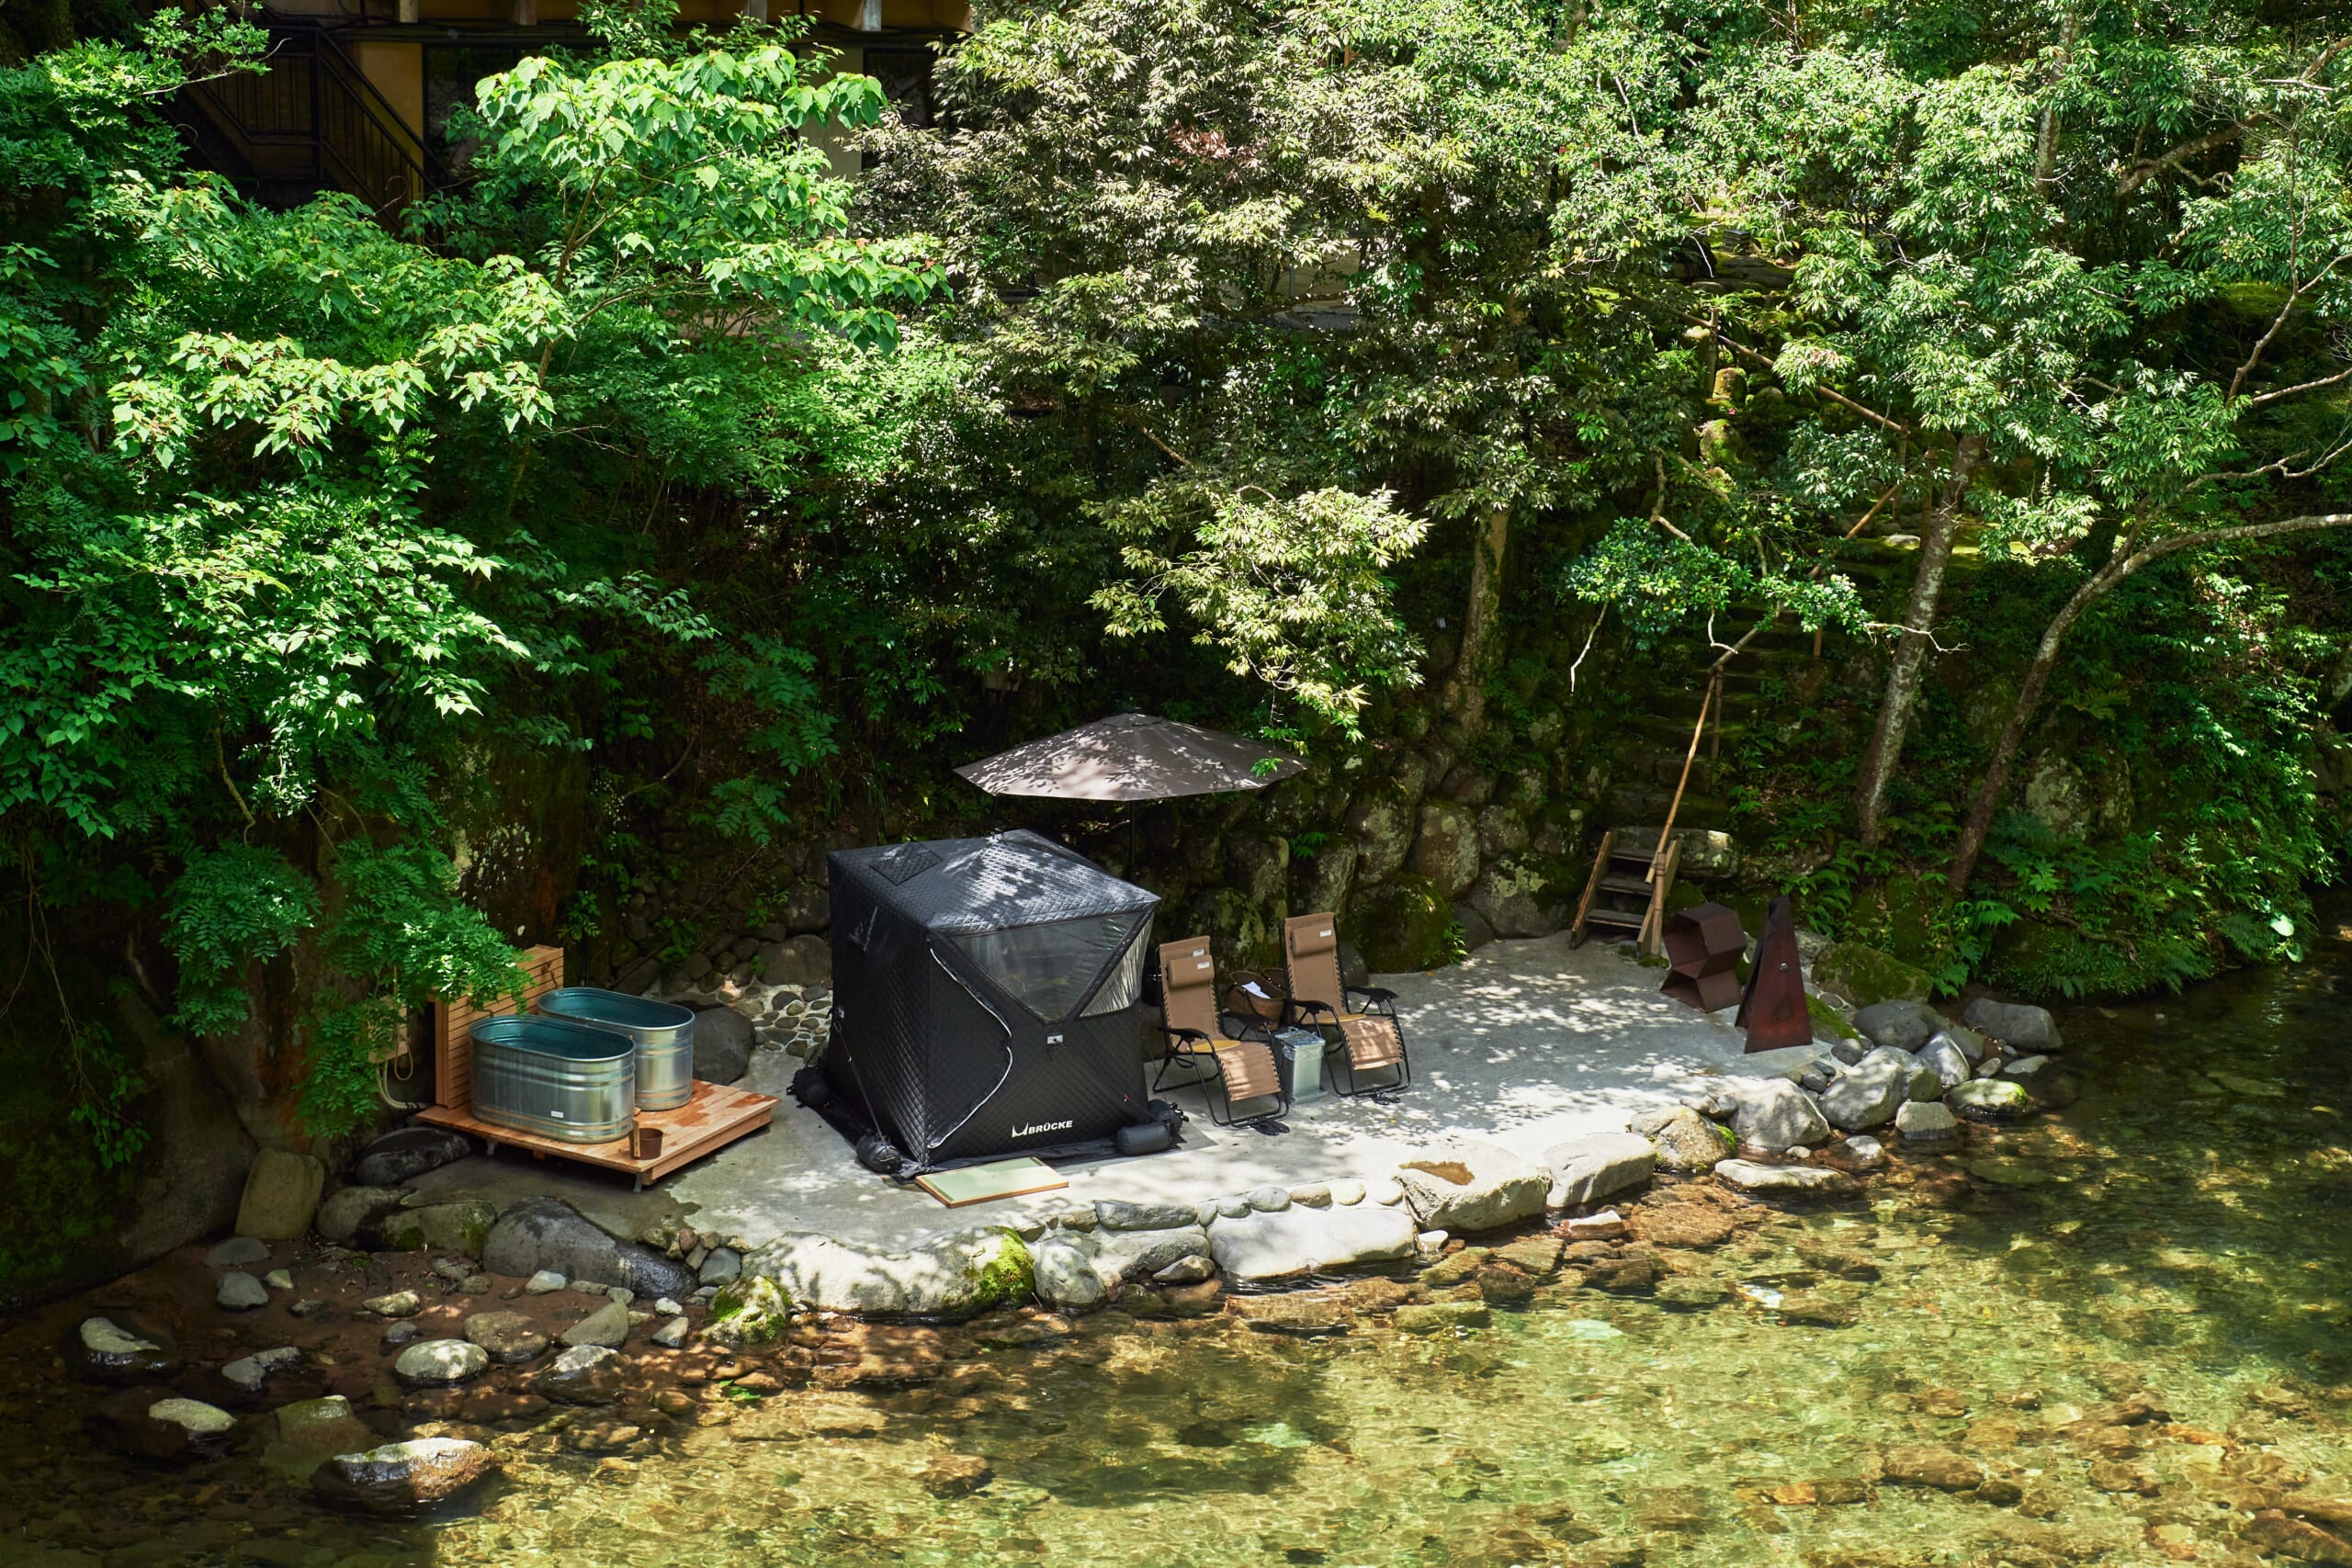 Ochiairo's bath and tent sauna